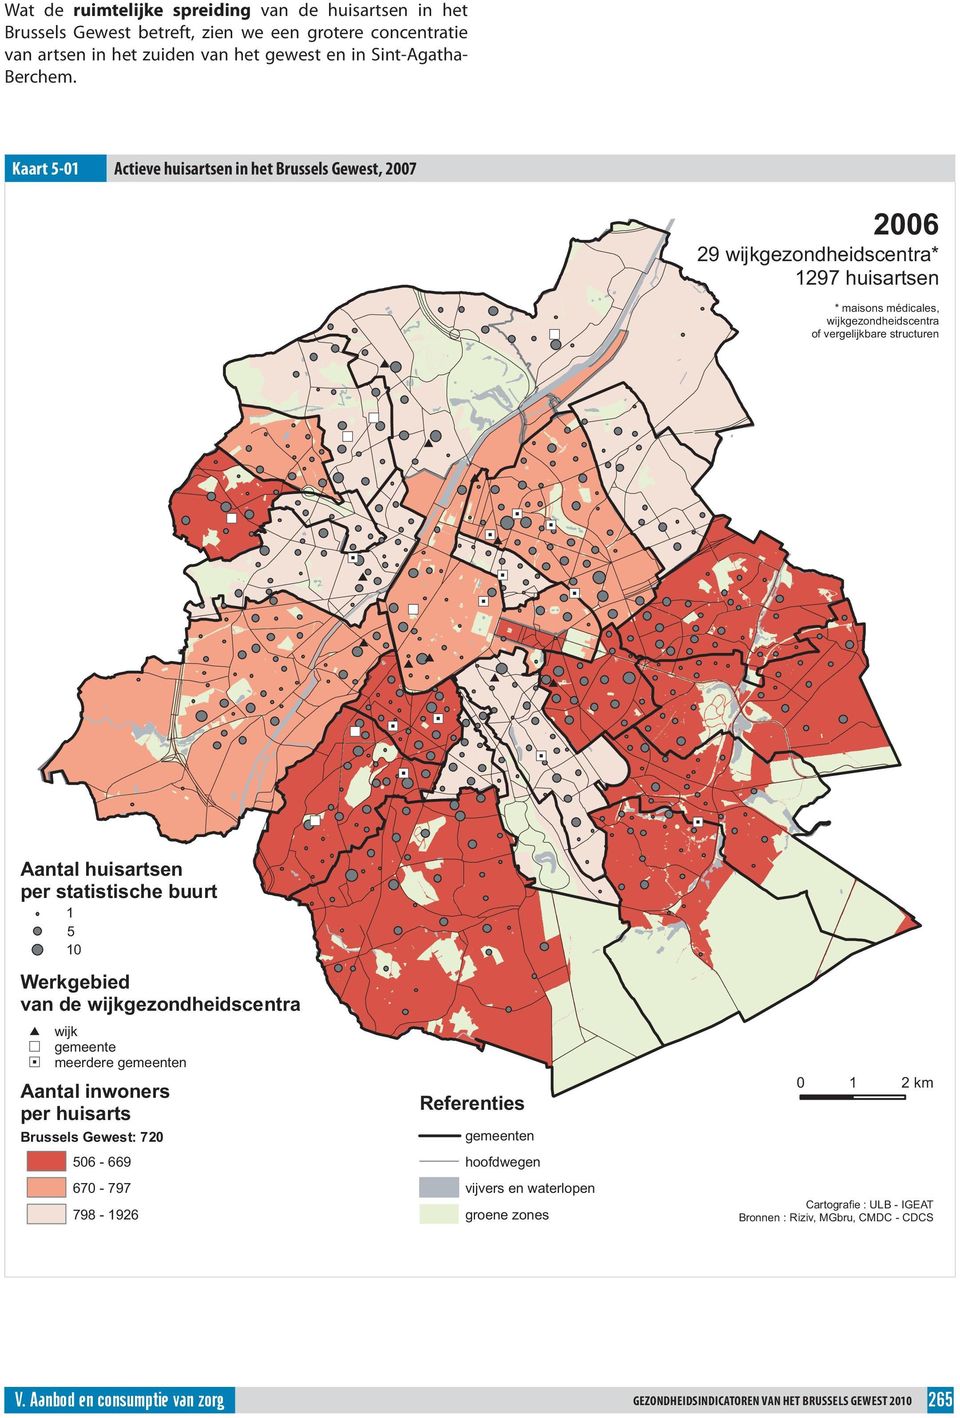 huisartsen per statistische buurt 1 5 1 Werkgebied van de wijkgezondheidscentra wijk gemeente meerdere gemeenten Aantal inwoners per huisarts Brussels Gewest: 72 56-669 67-797